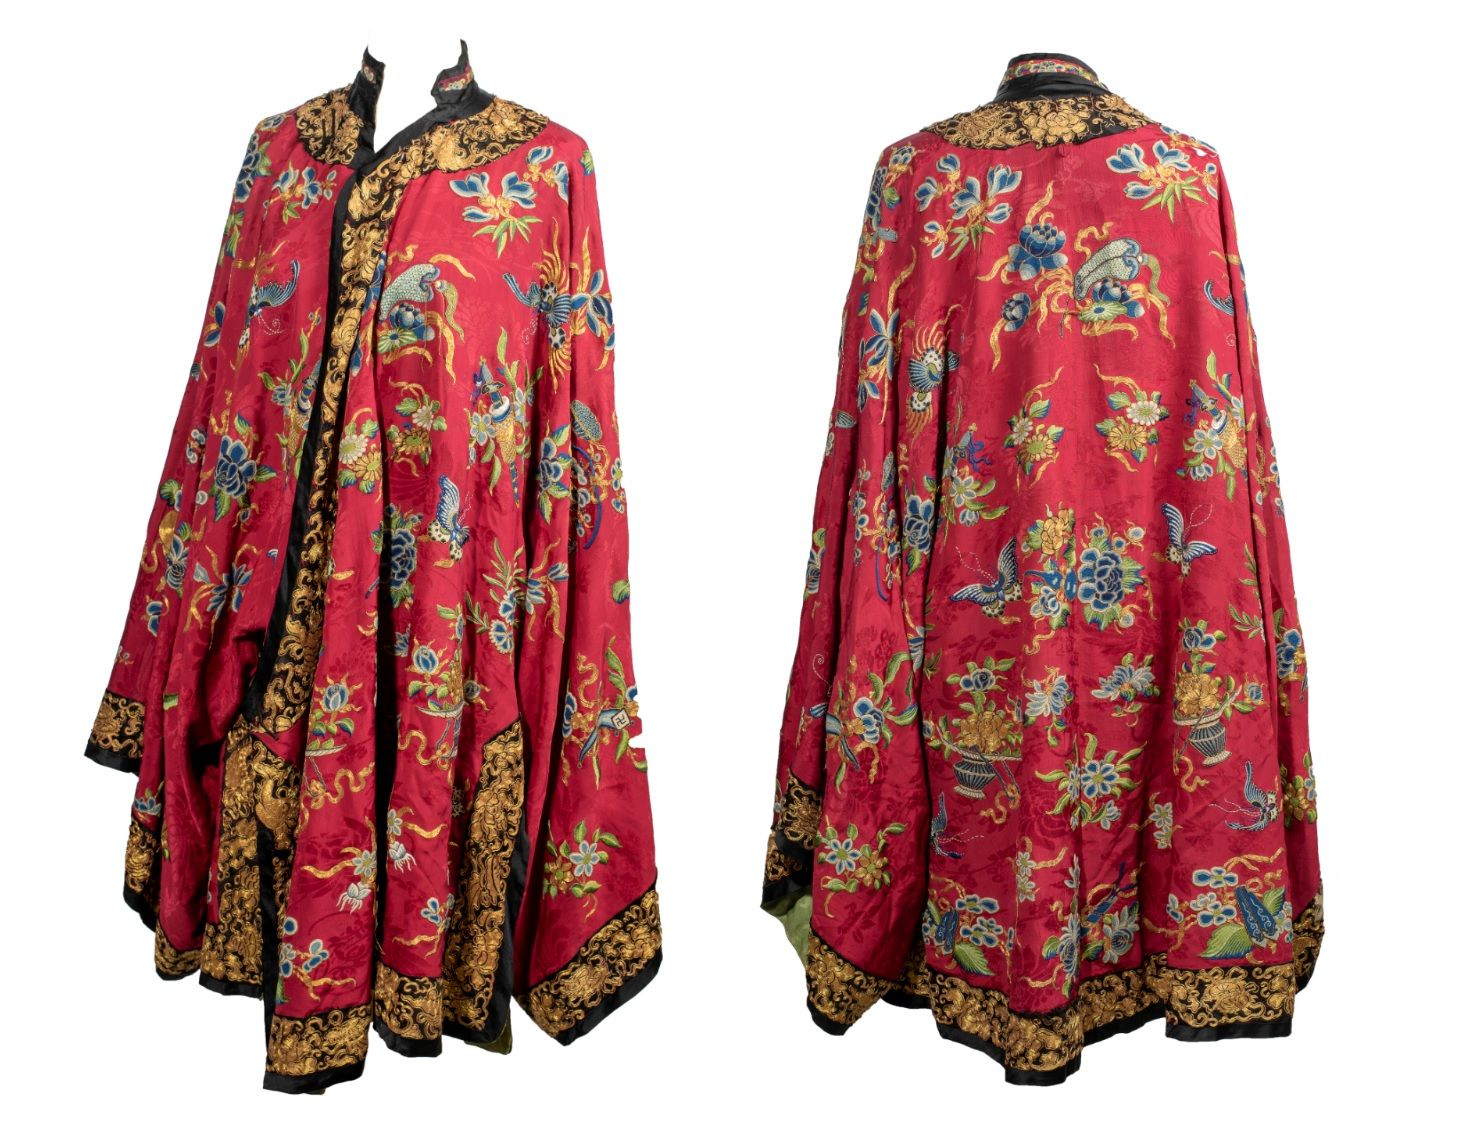 CHINE 外套/刺绣的酒红色丝绸
A短袖。丝缎上绣有各种符号，包括鲜花和蝴蝶。双层绿色丝绸，领口为黑色丝绸和金线。(使用中的磨损，拉线)